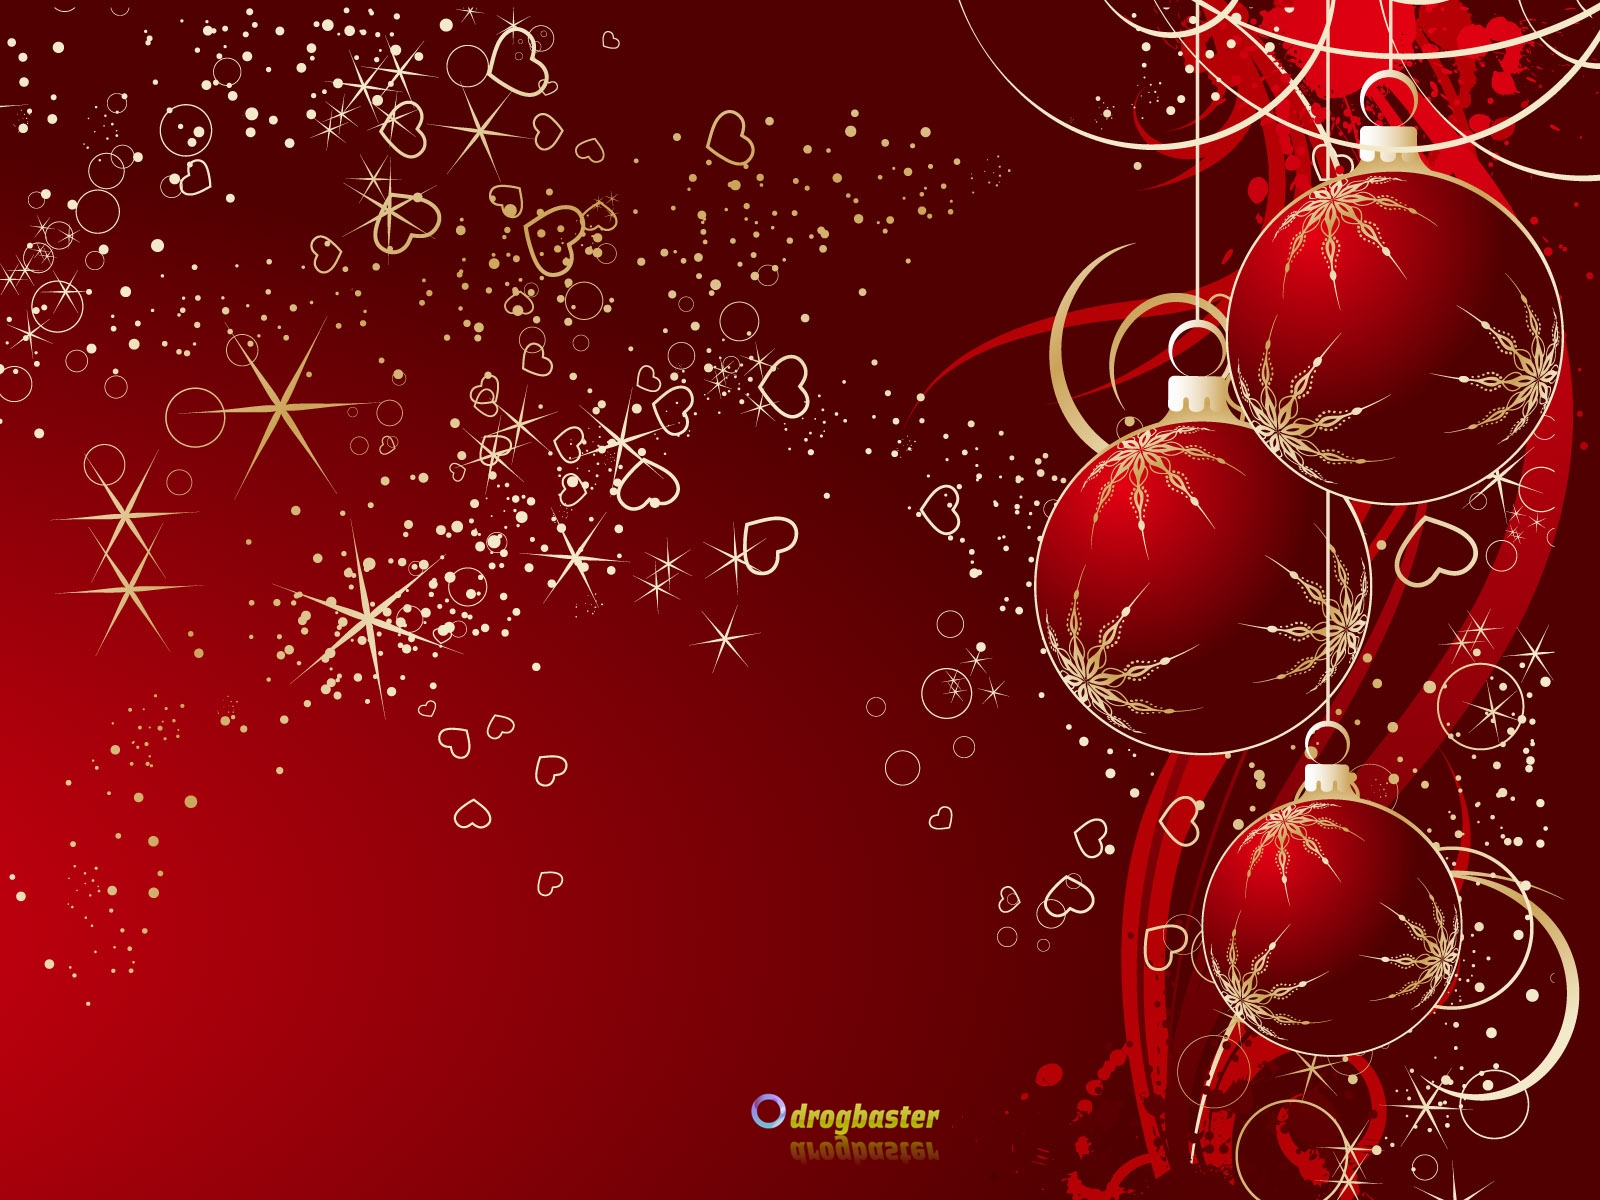 Sfondi Natalizi Per Cellulare.Sfondi Immagini E Decori Di Natale Grafica Per Cellulare Android